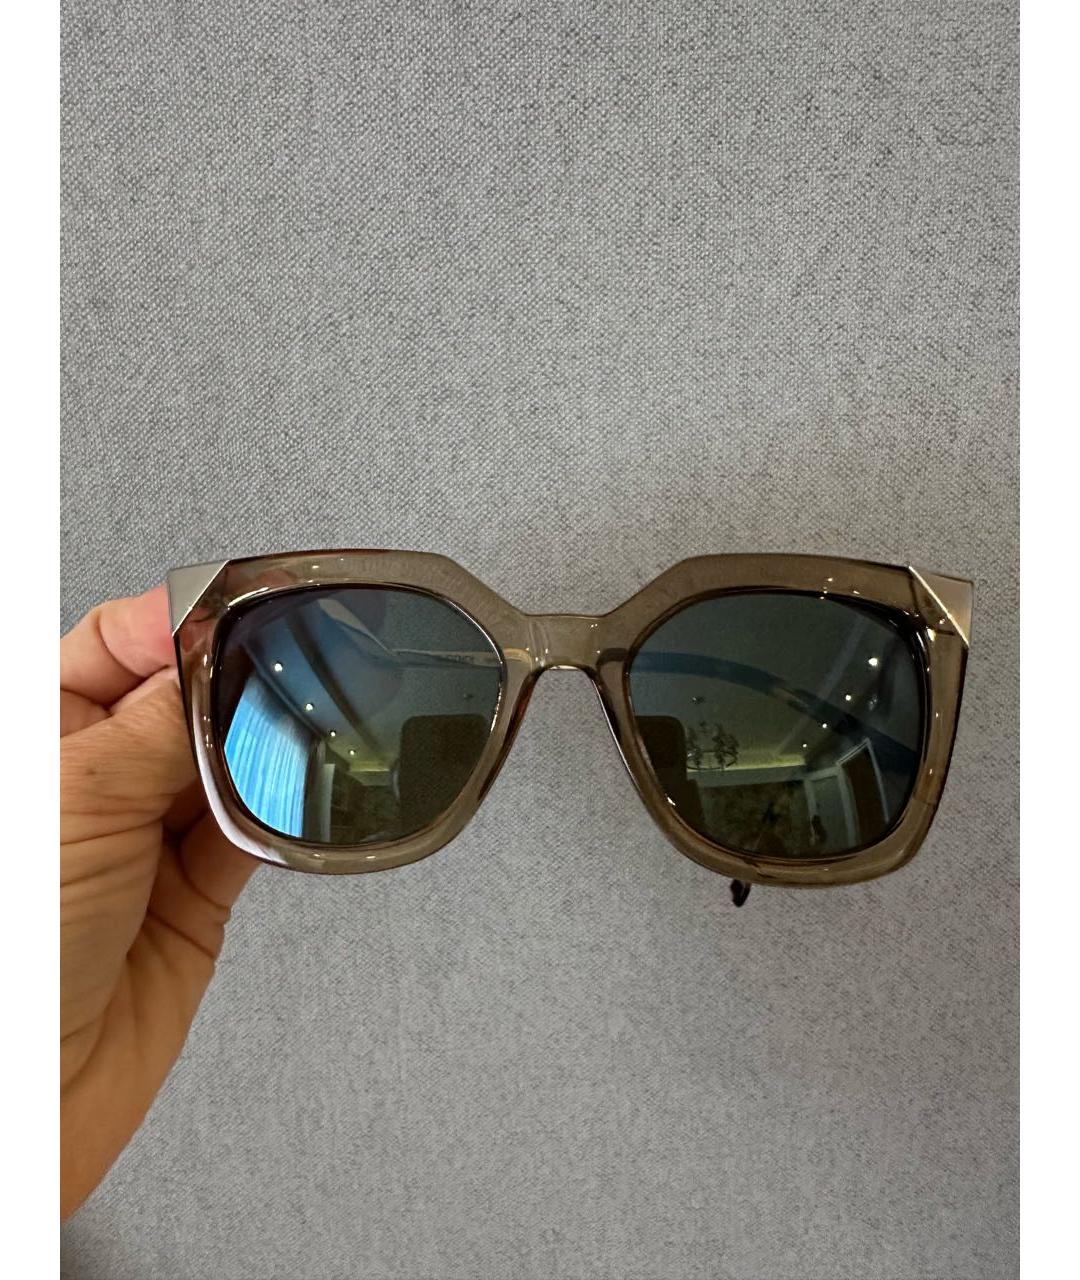 FENDI Коричневые пластиковые солнцезащитные очки, фото 6